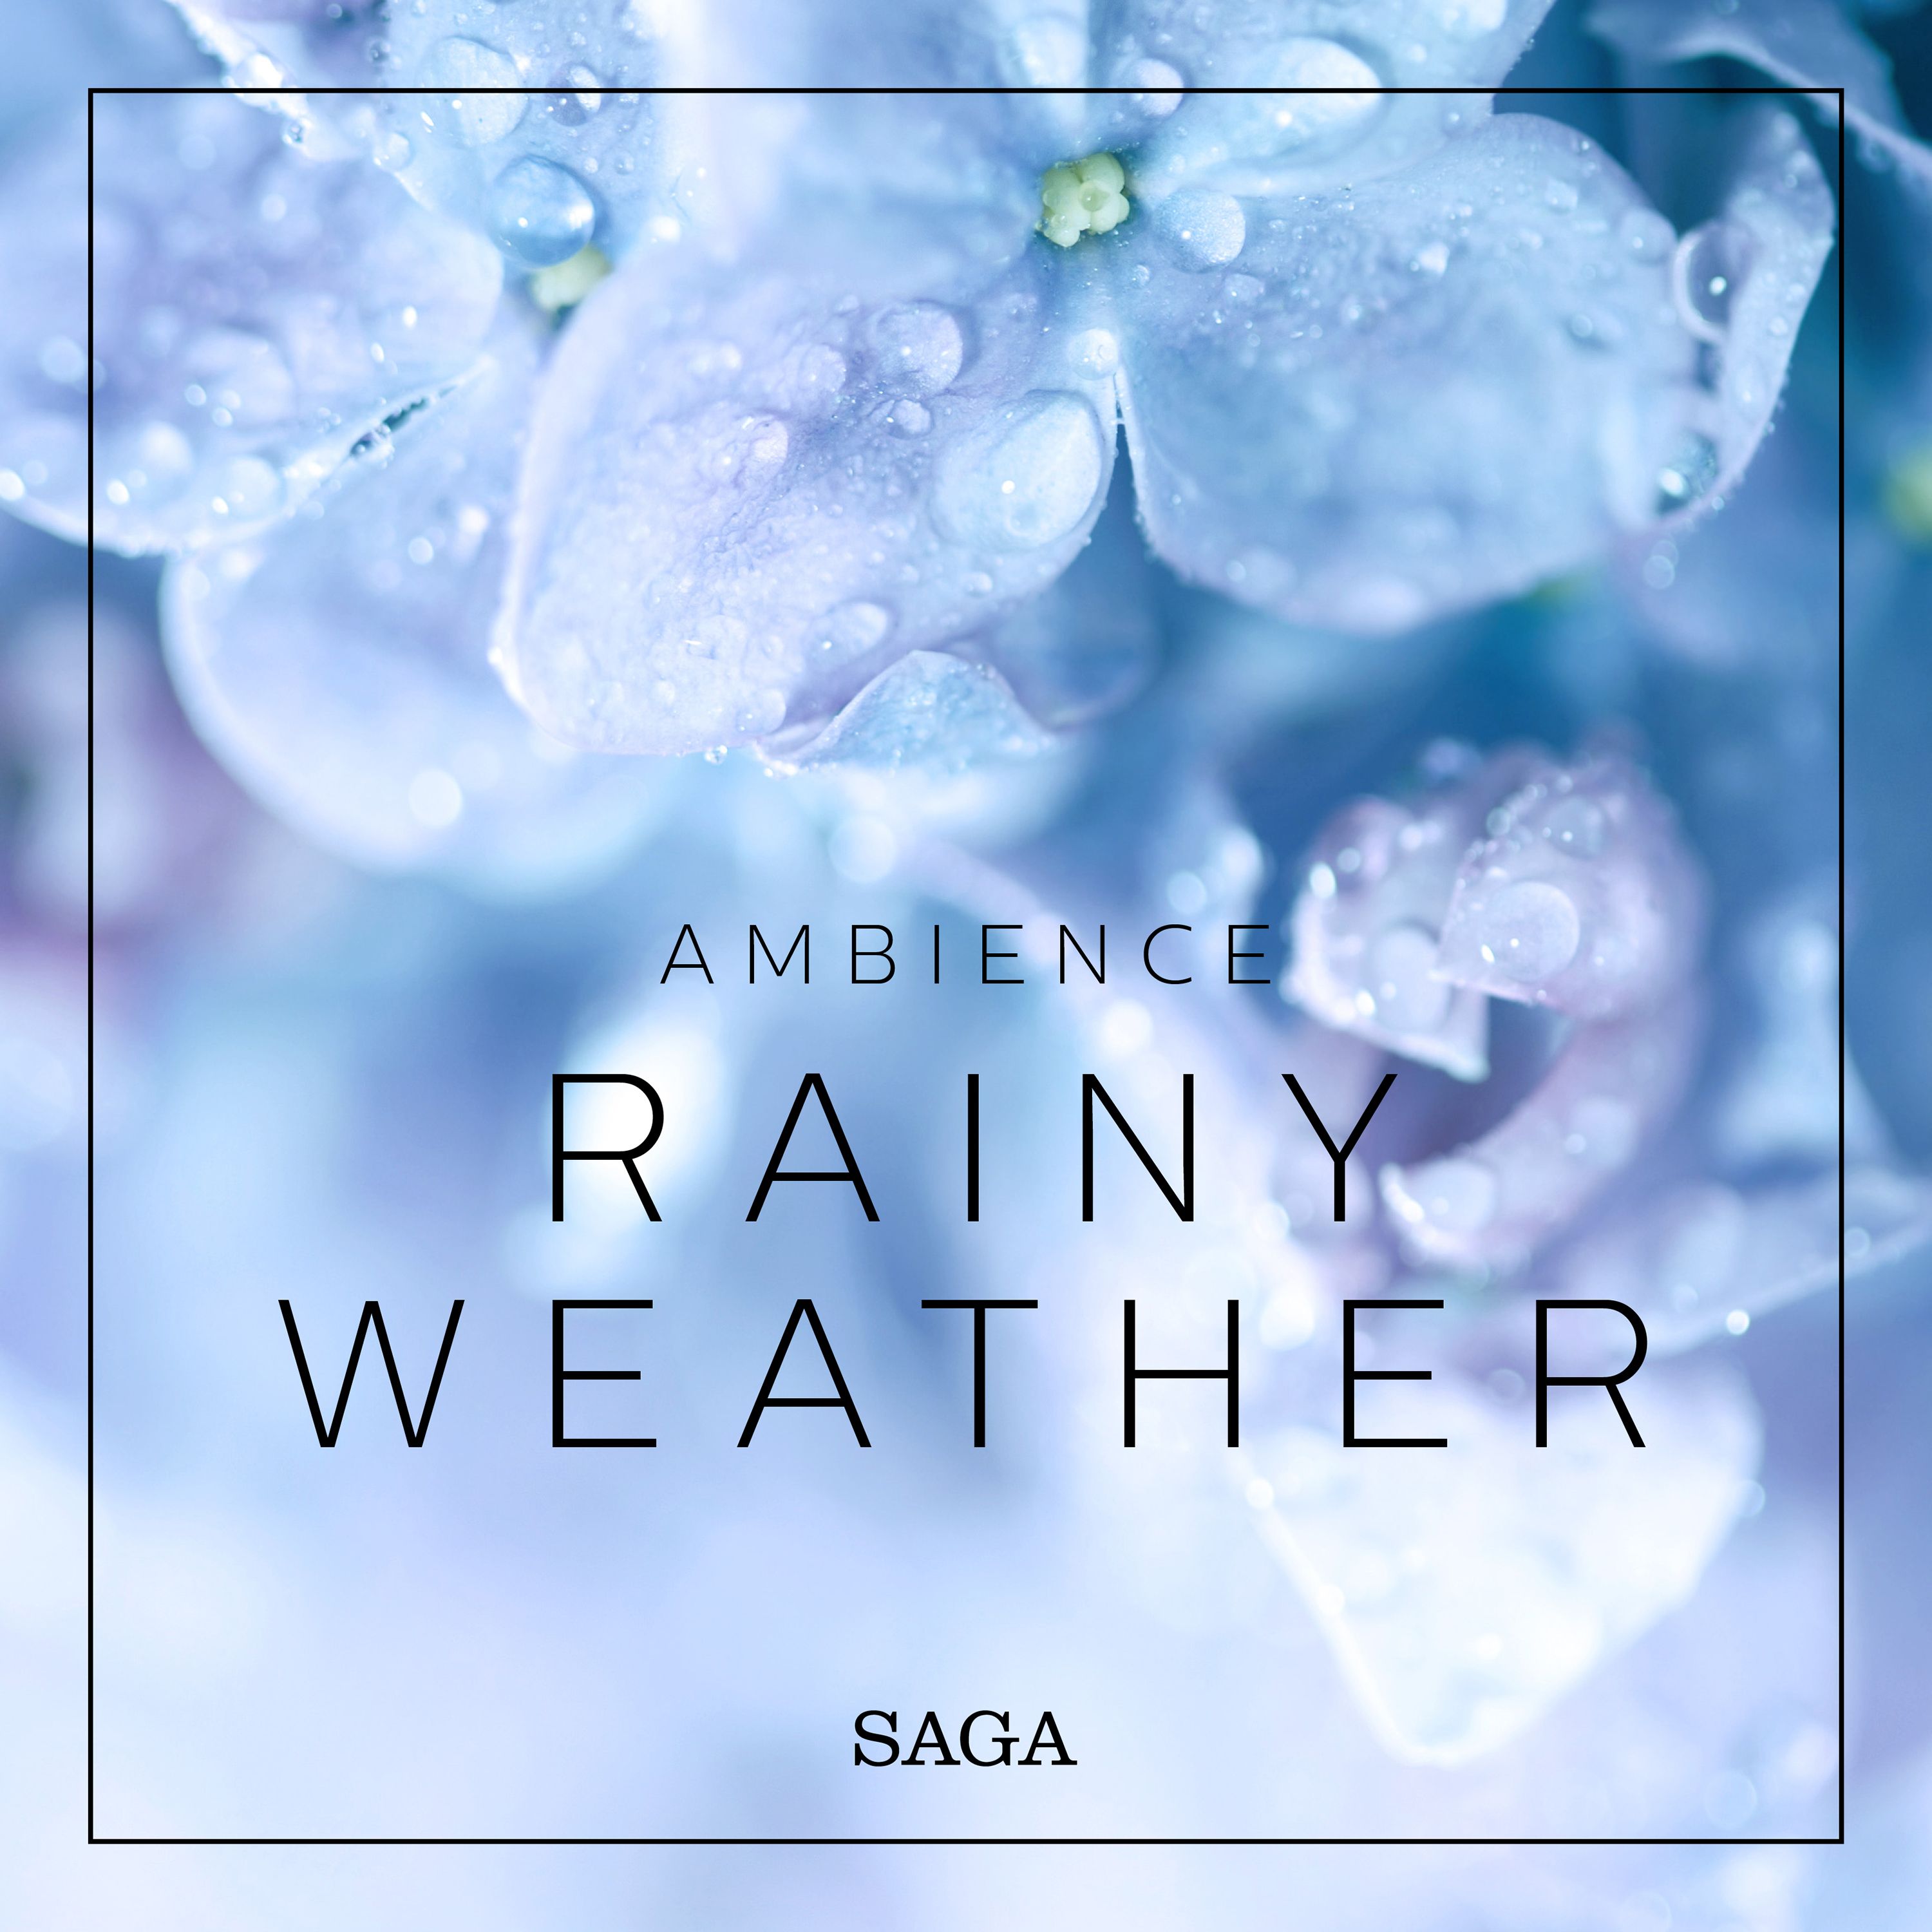 Ambience - Rainy Weather, lydbog af Rasmus Broe